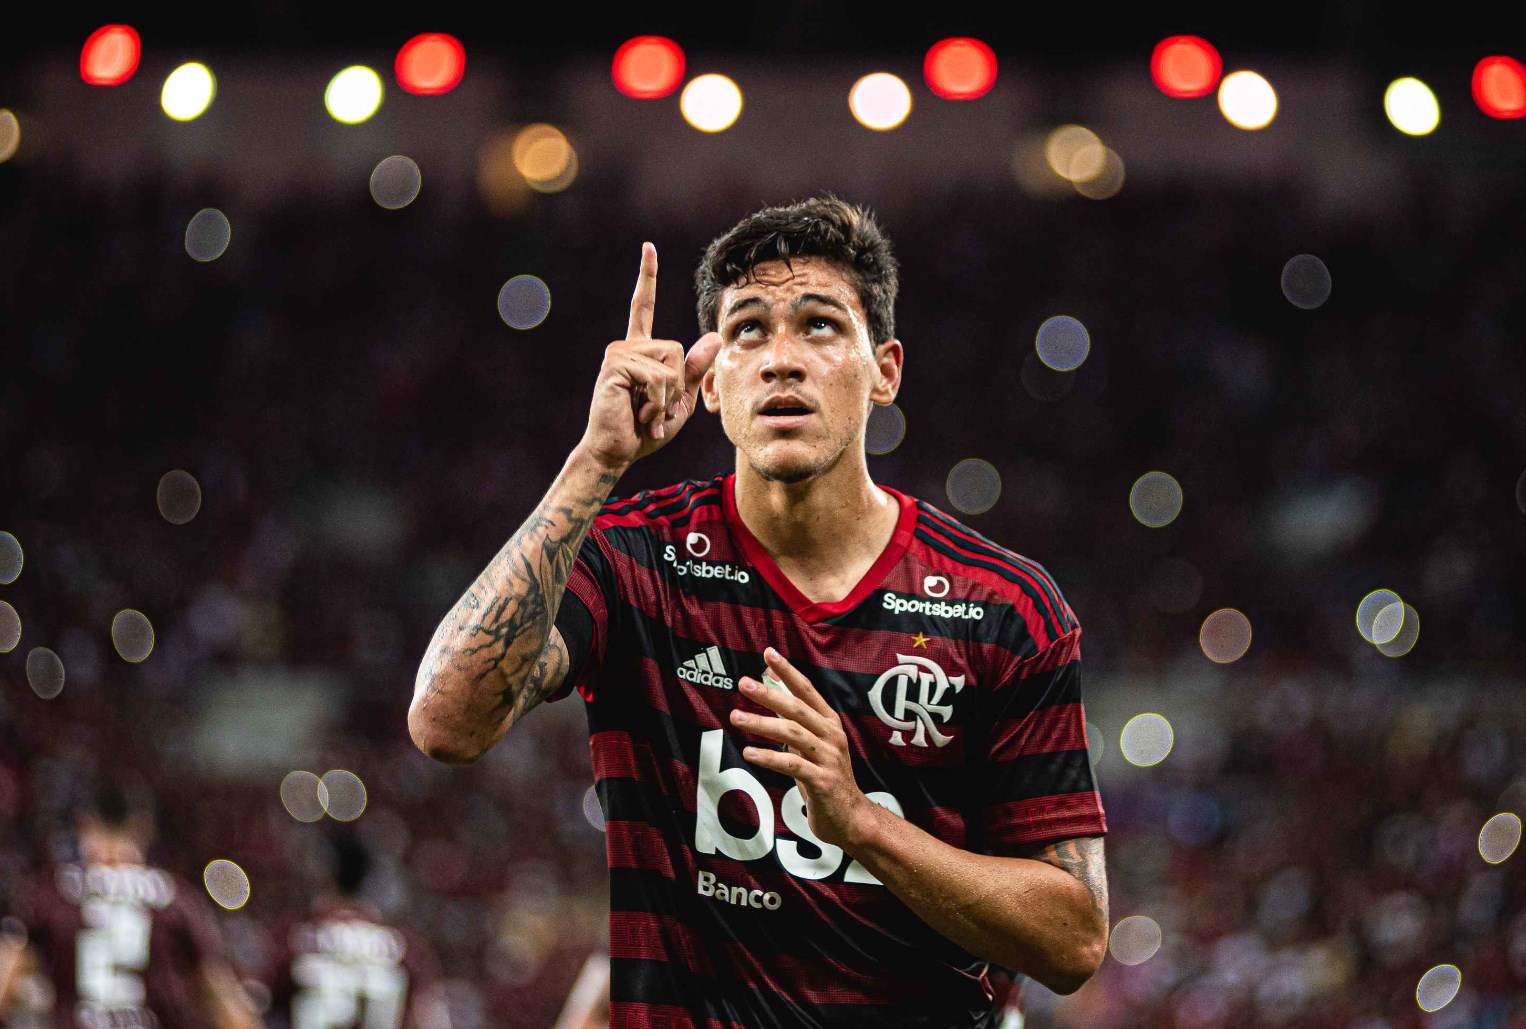 8º - Pedro, atacante, Flamengo (15 milhões de euros)